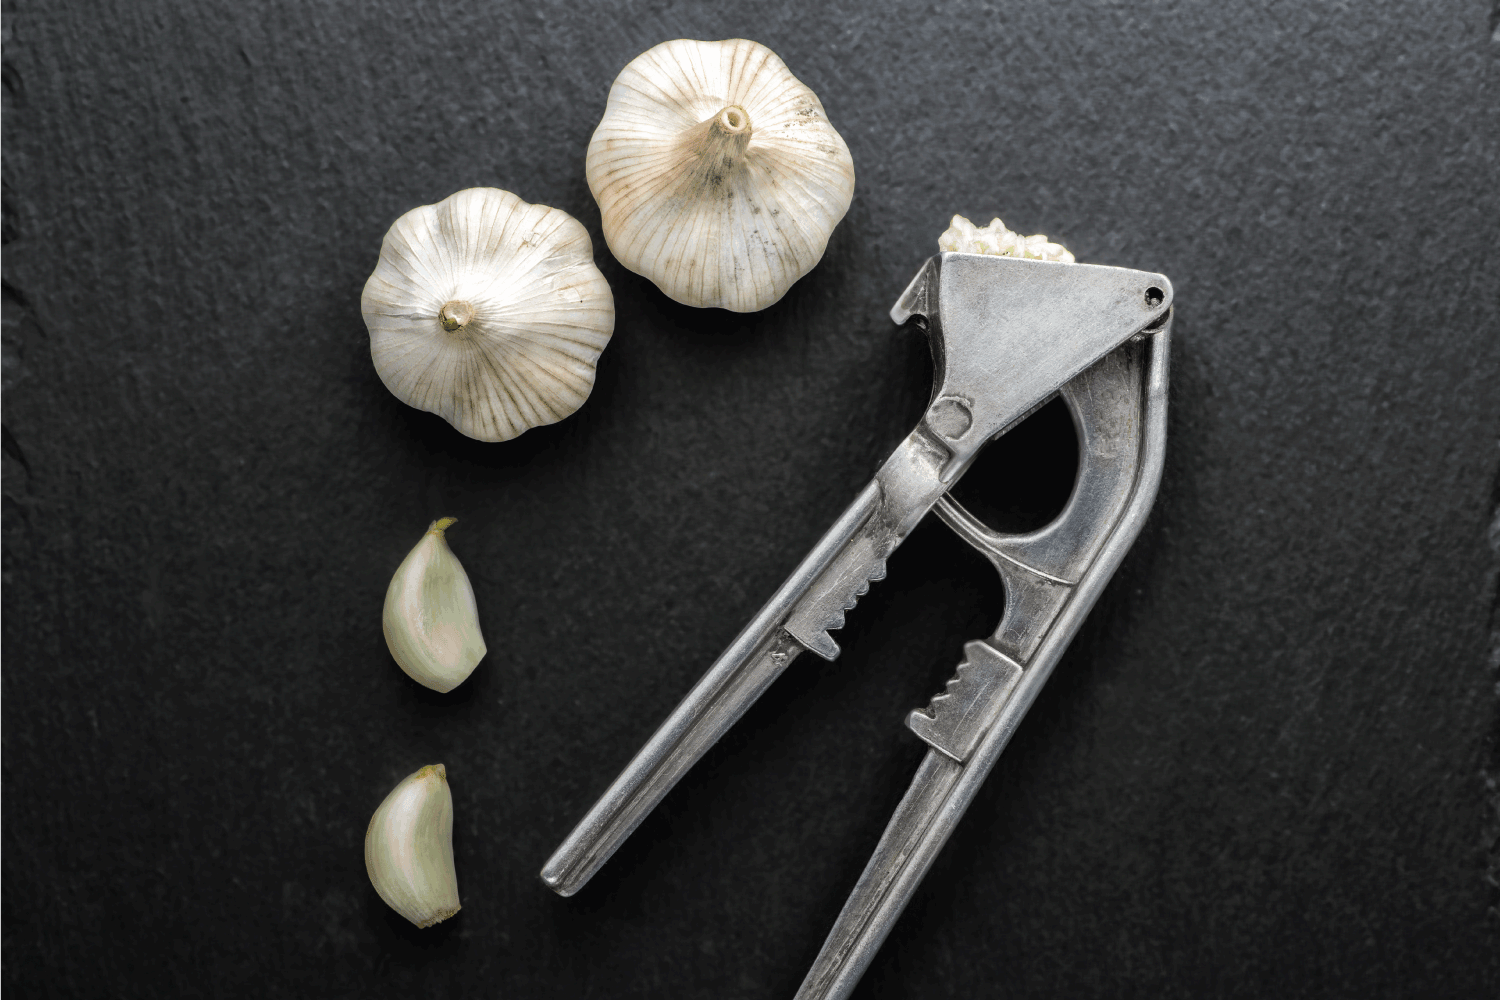 Garlic press and garlic